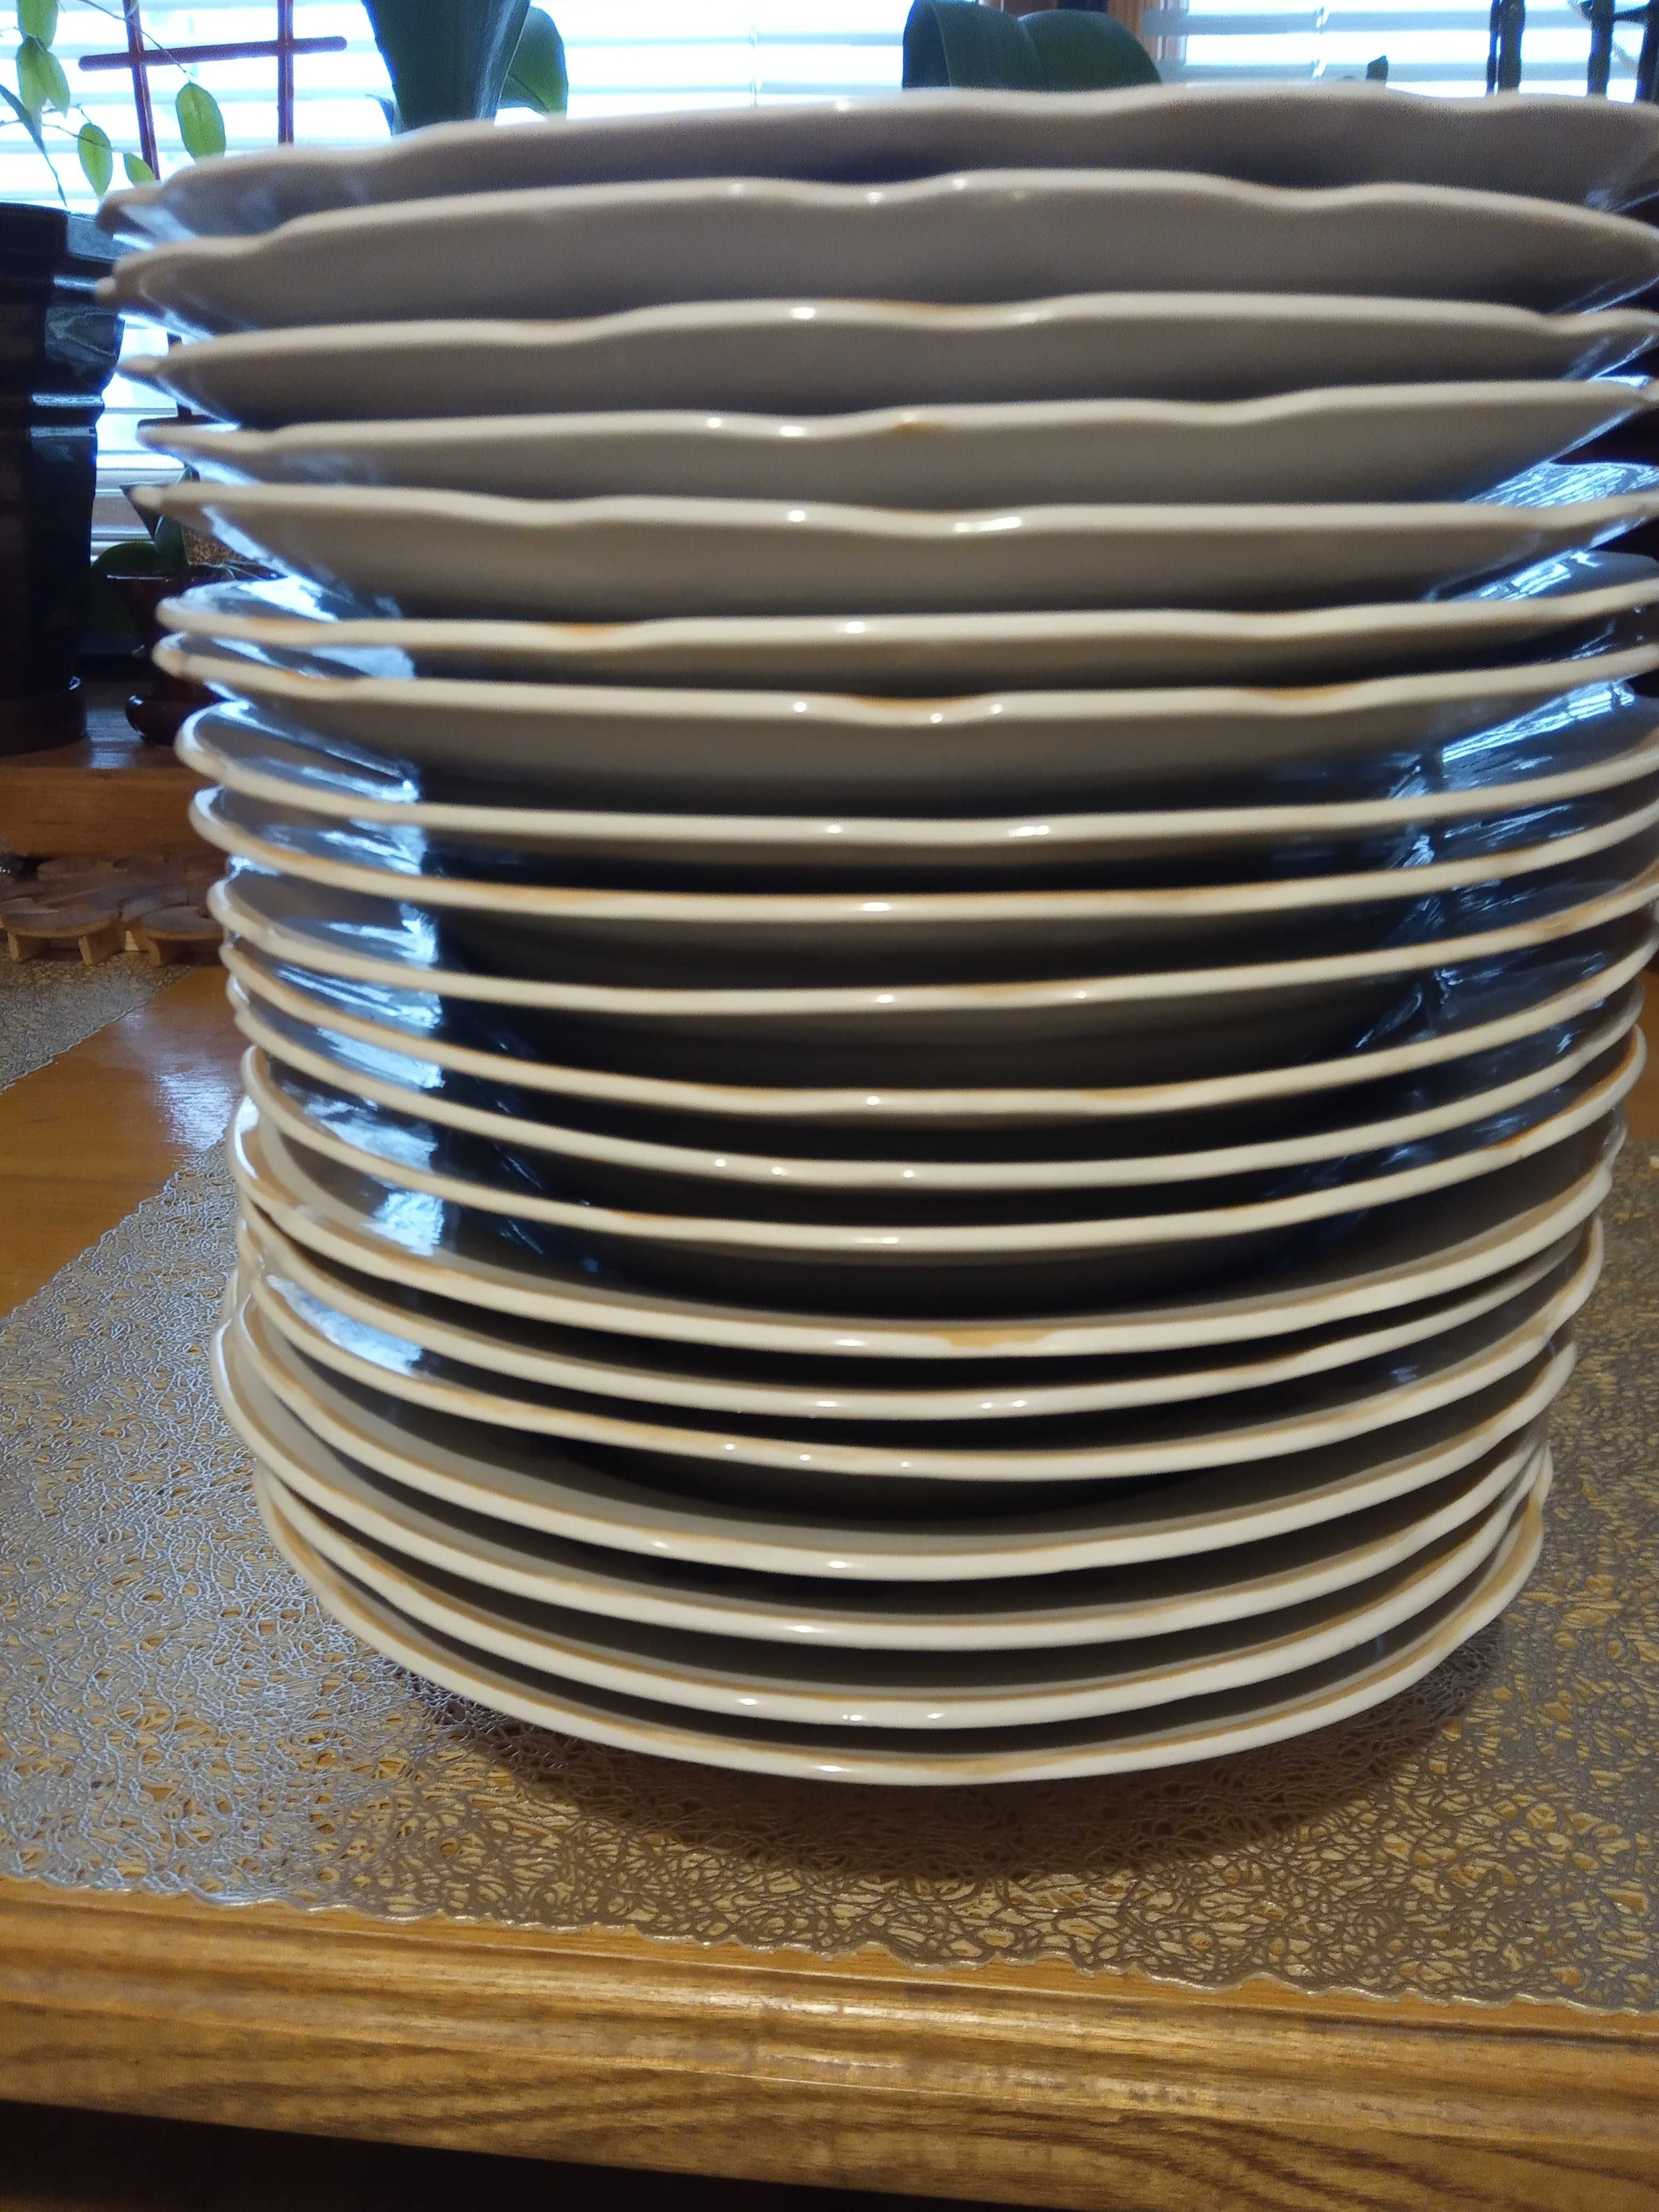 Фарфоровые тарелки глубокие новые диаметром  20 см - 20штук